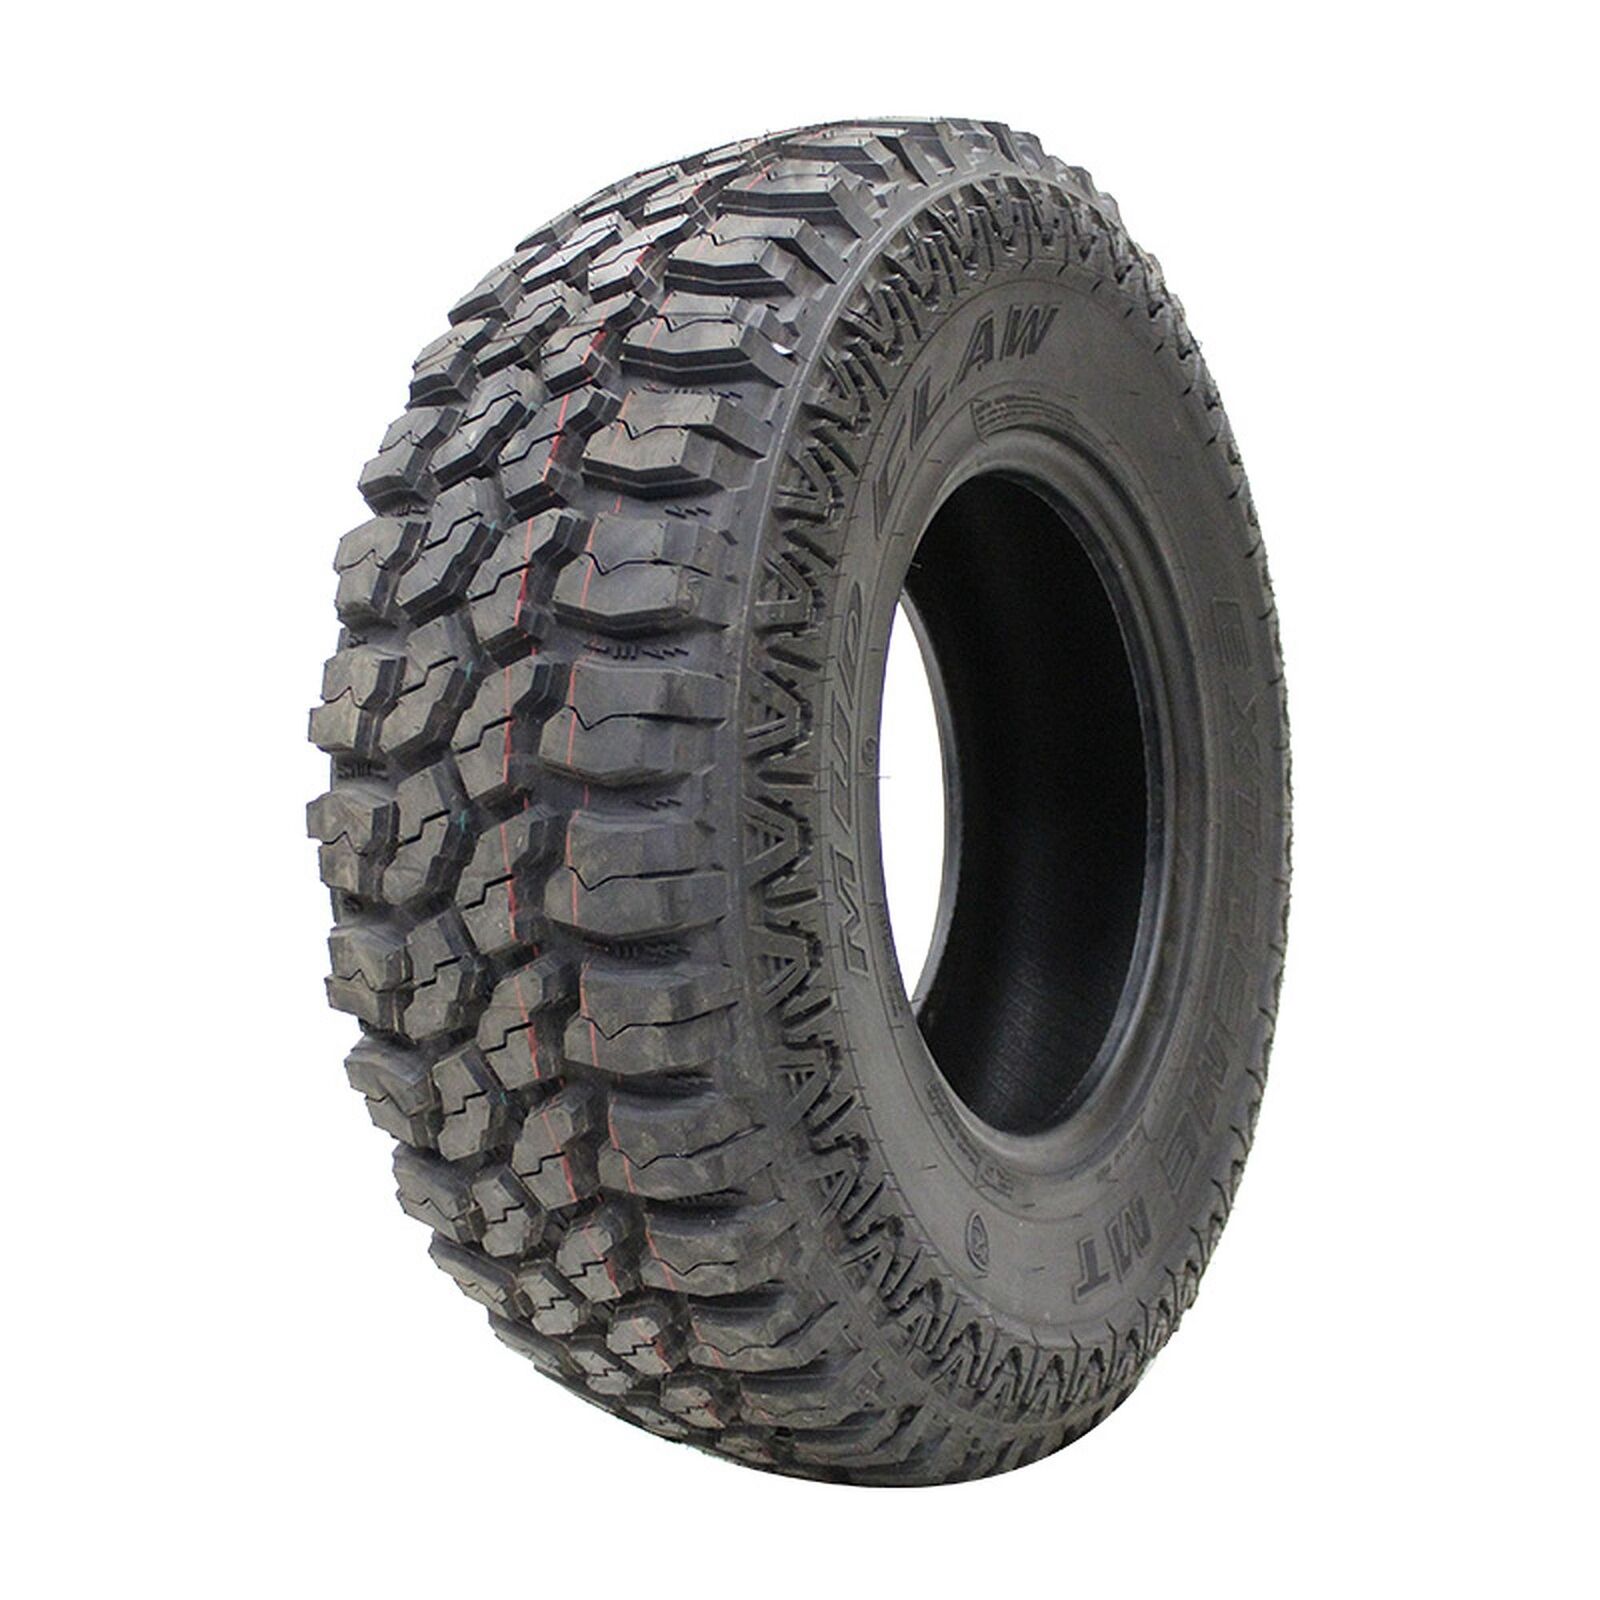 1 New Eldorado Mud Claw Extreme M/t  - Lt285x70r17 Tires 2857017 285 70 17